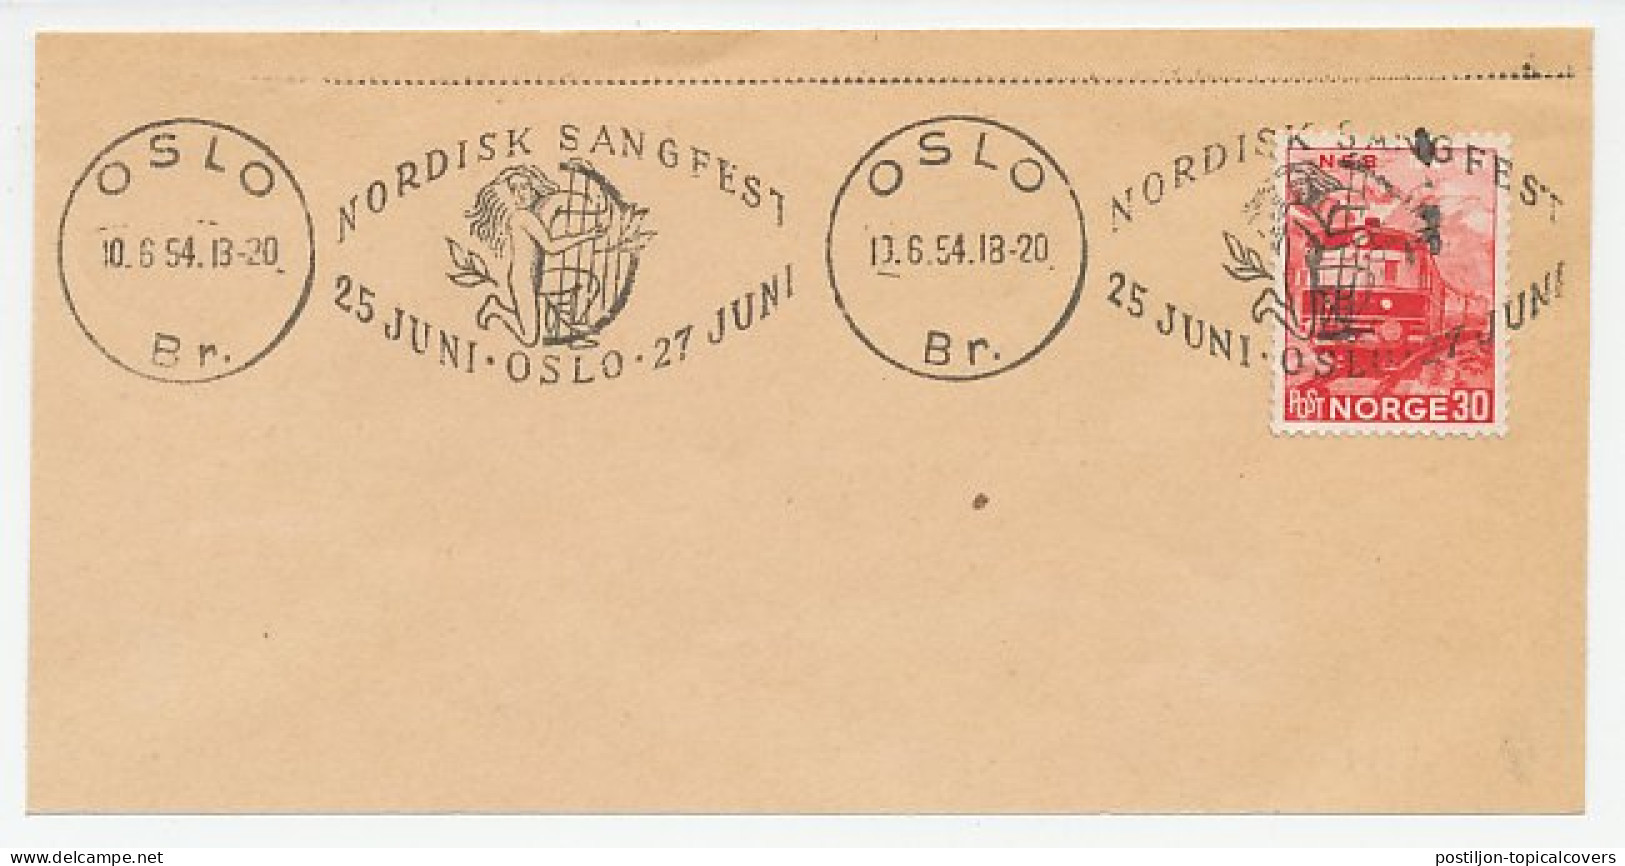 Postmark Norway 1954 Harp - Nordic Song Fest - Musique